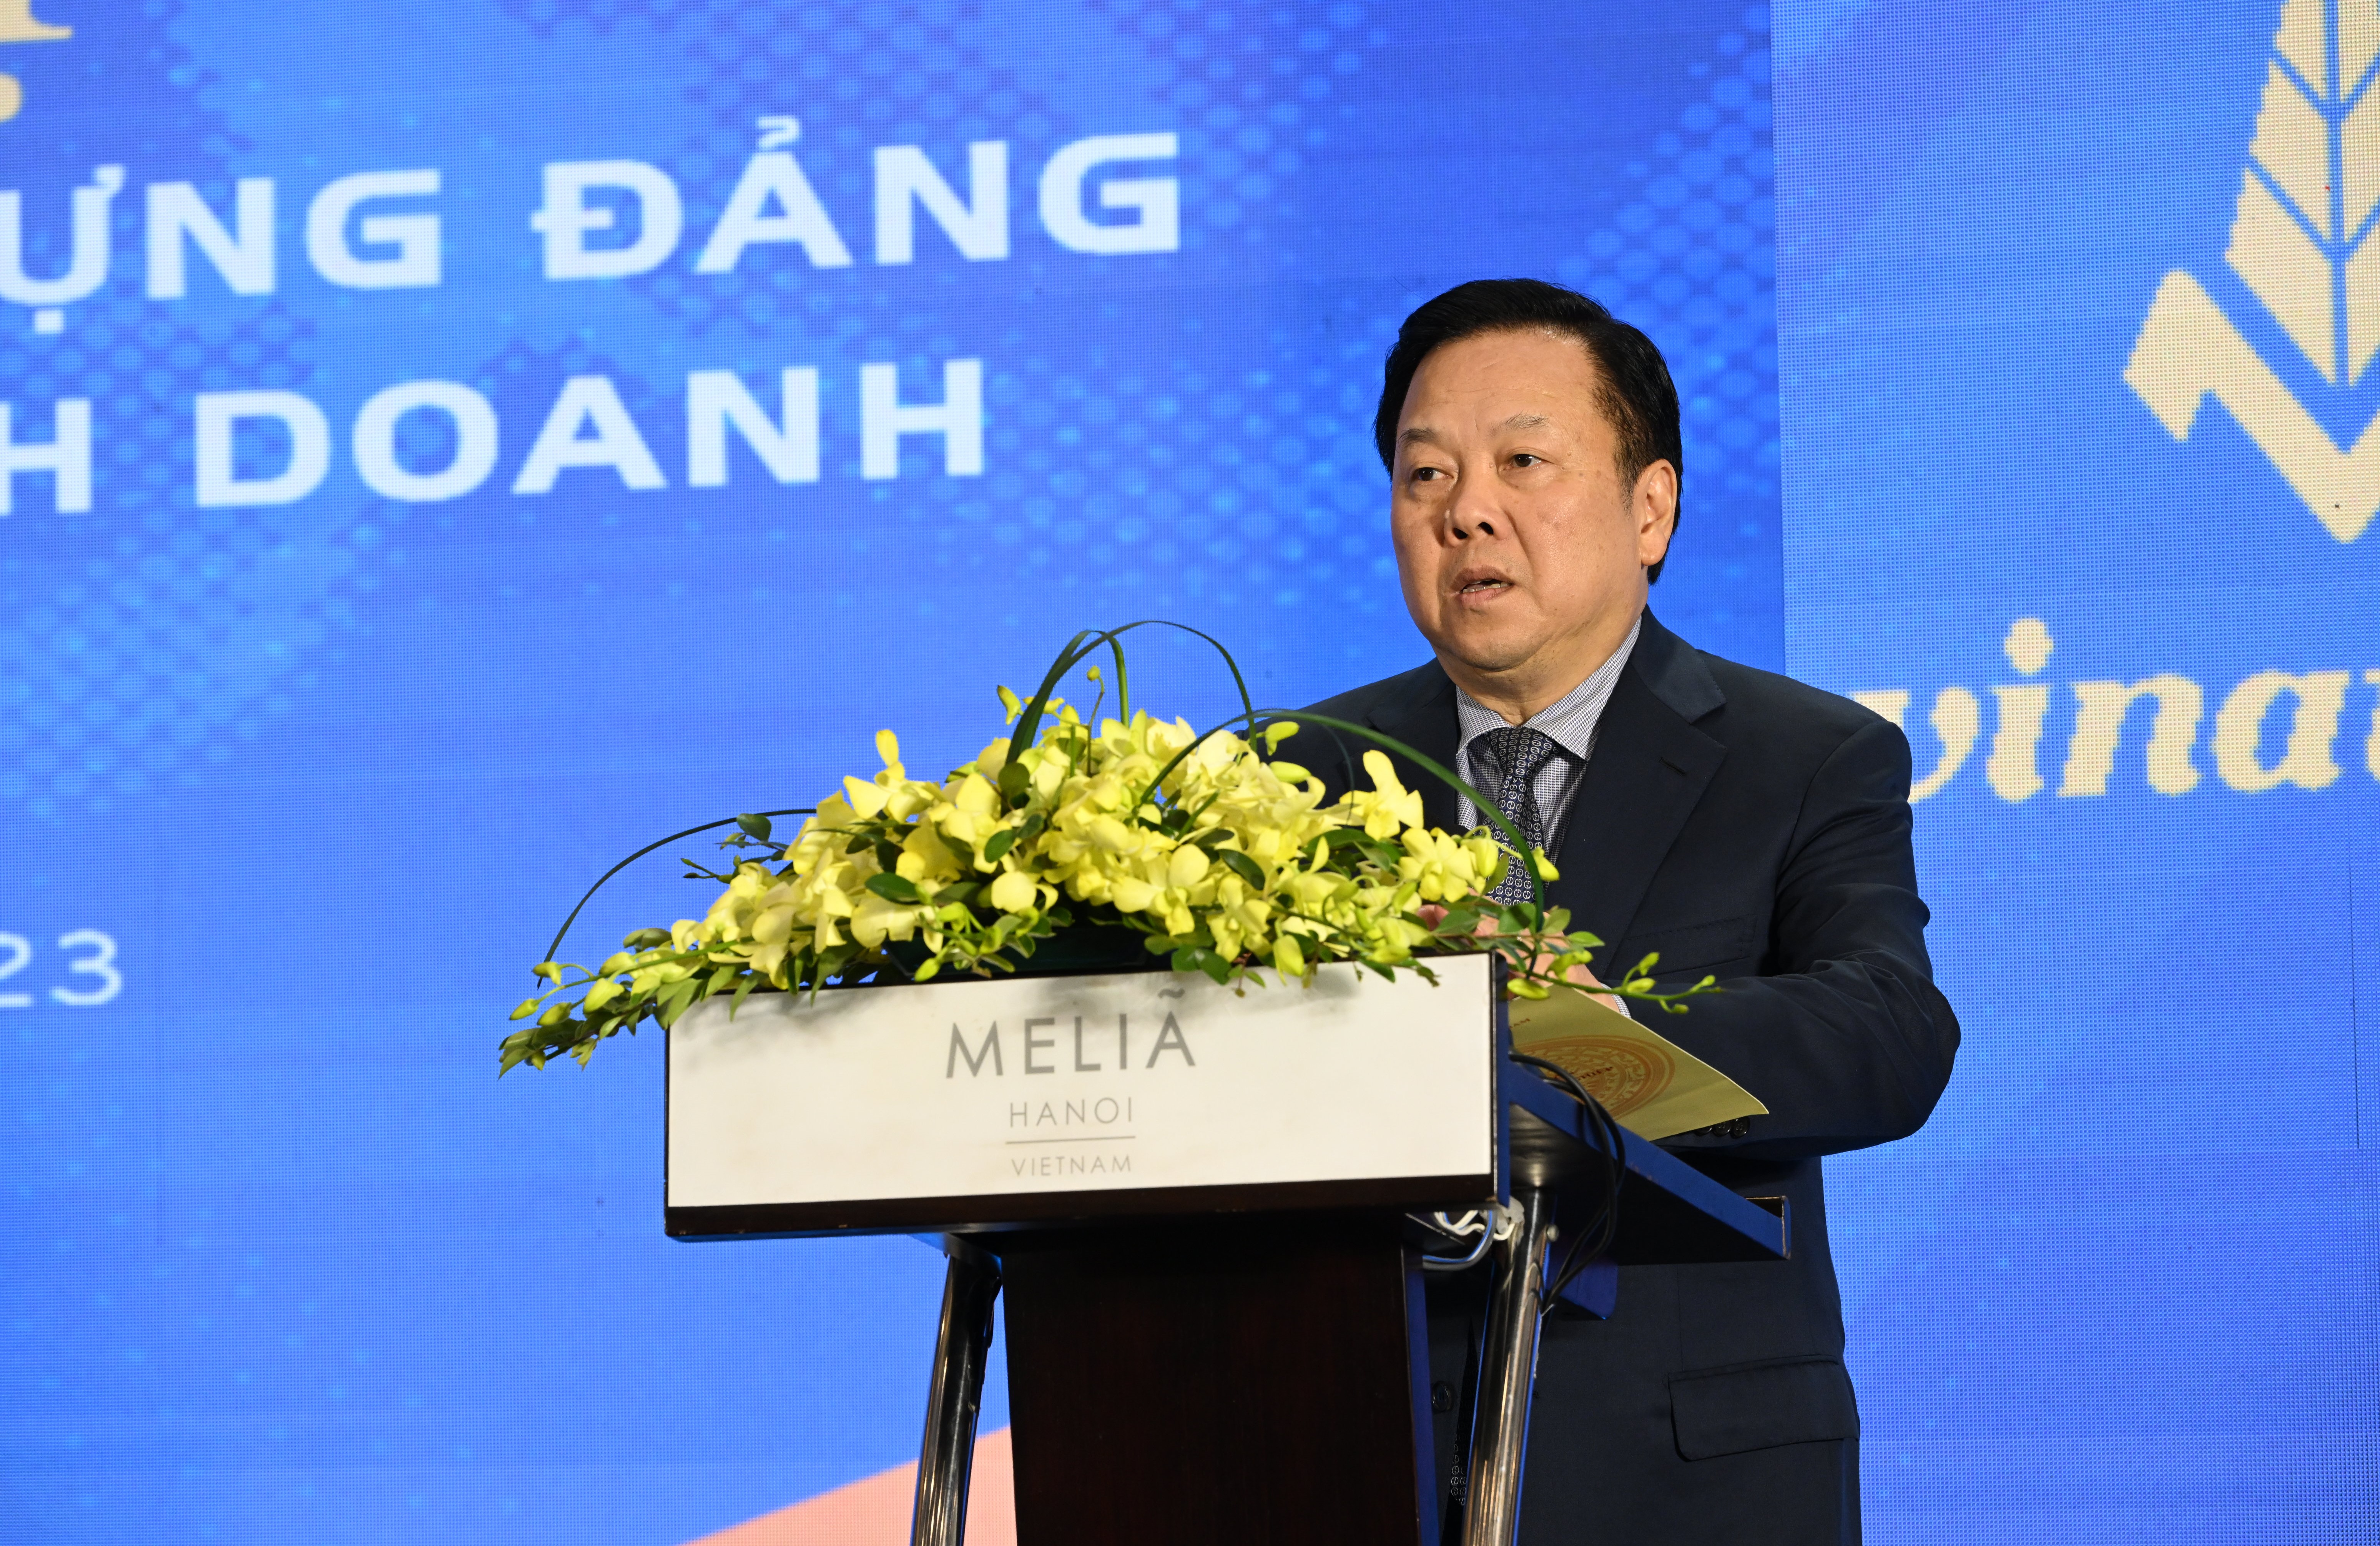 Tổng Công ty Thuốc lá Việt Nam: Phấn đấu hoàn thành các mục tiêu kế hoạch giai đoạn 2021 - 2025